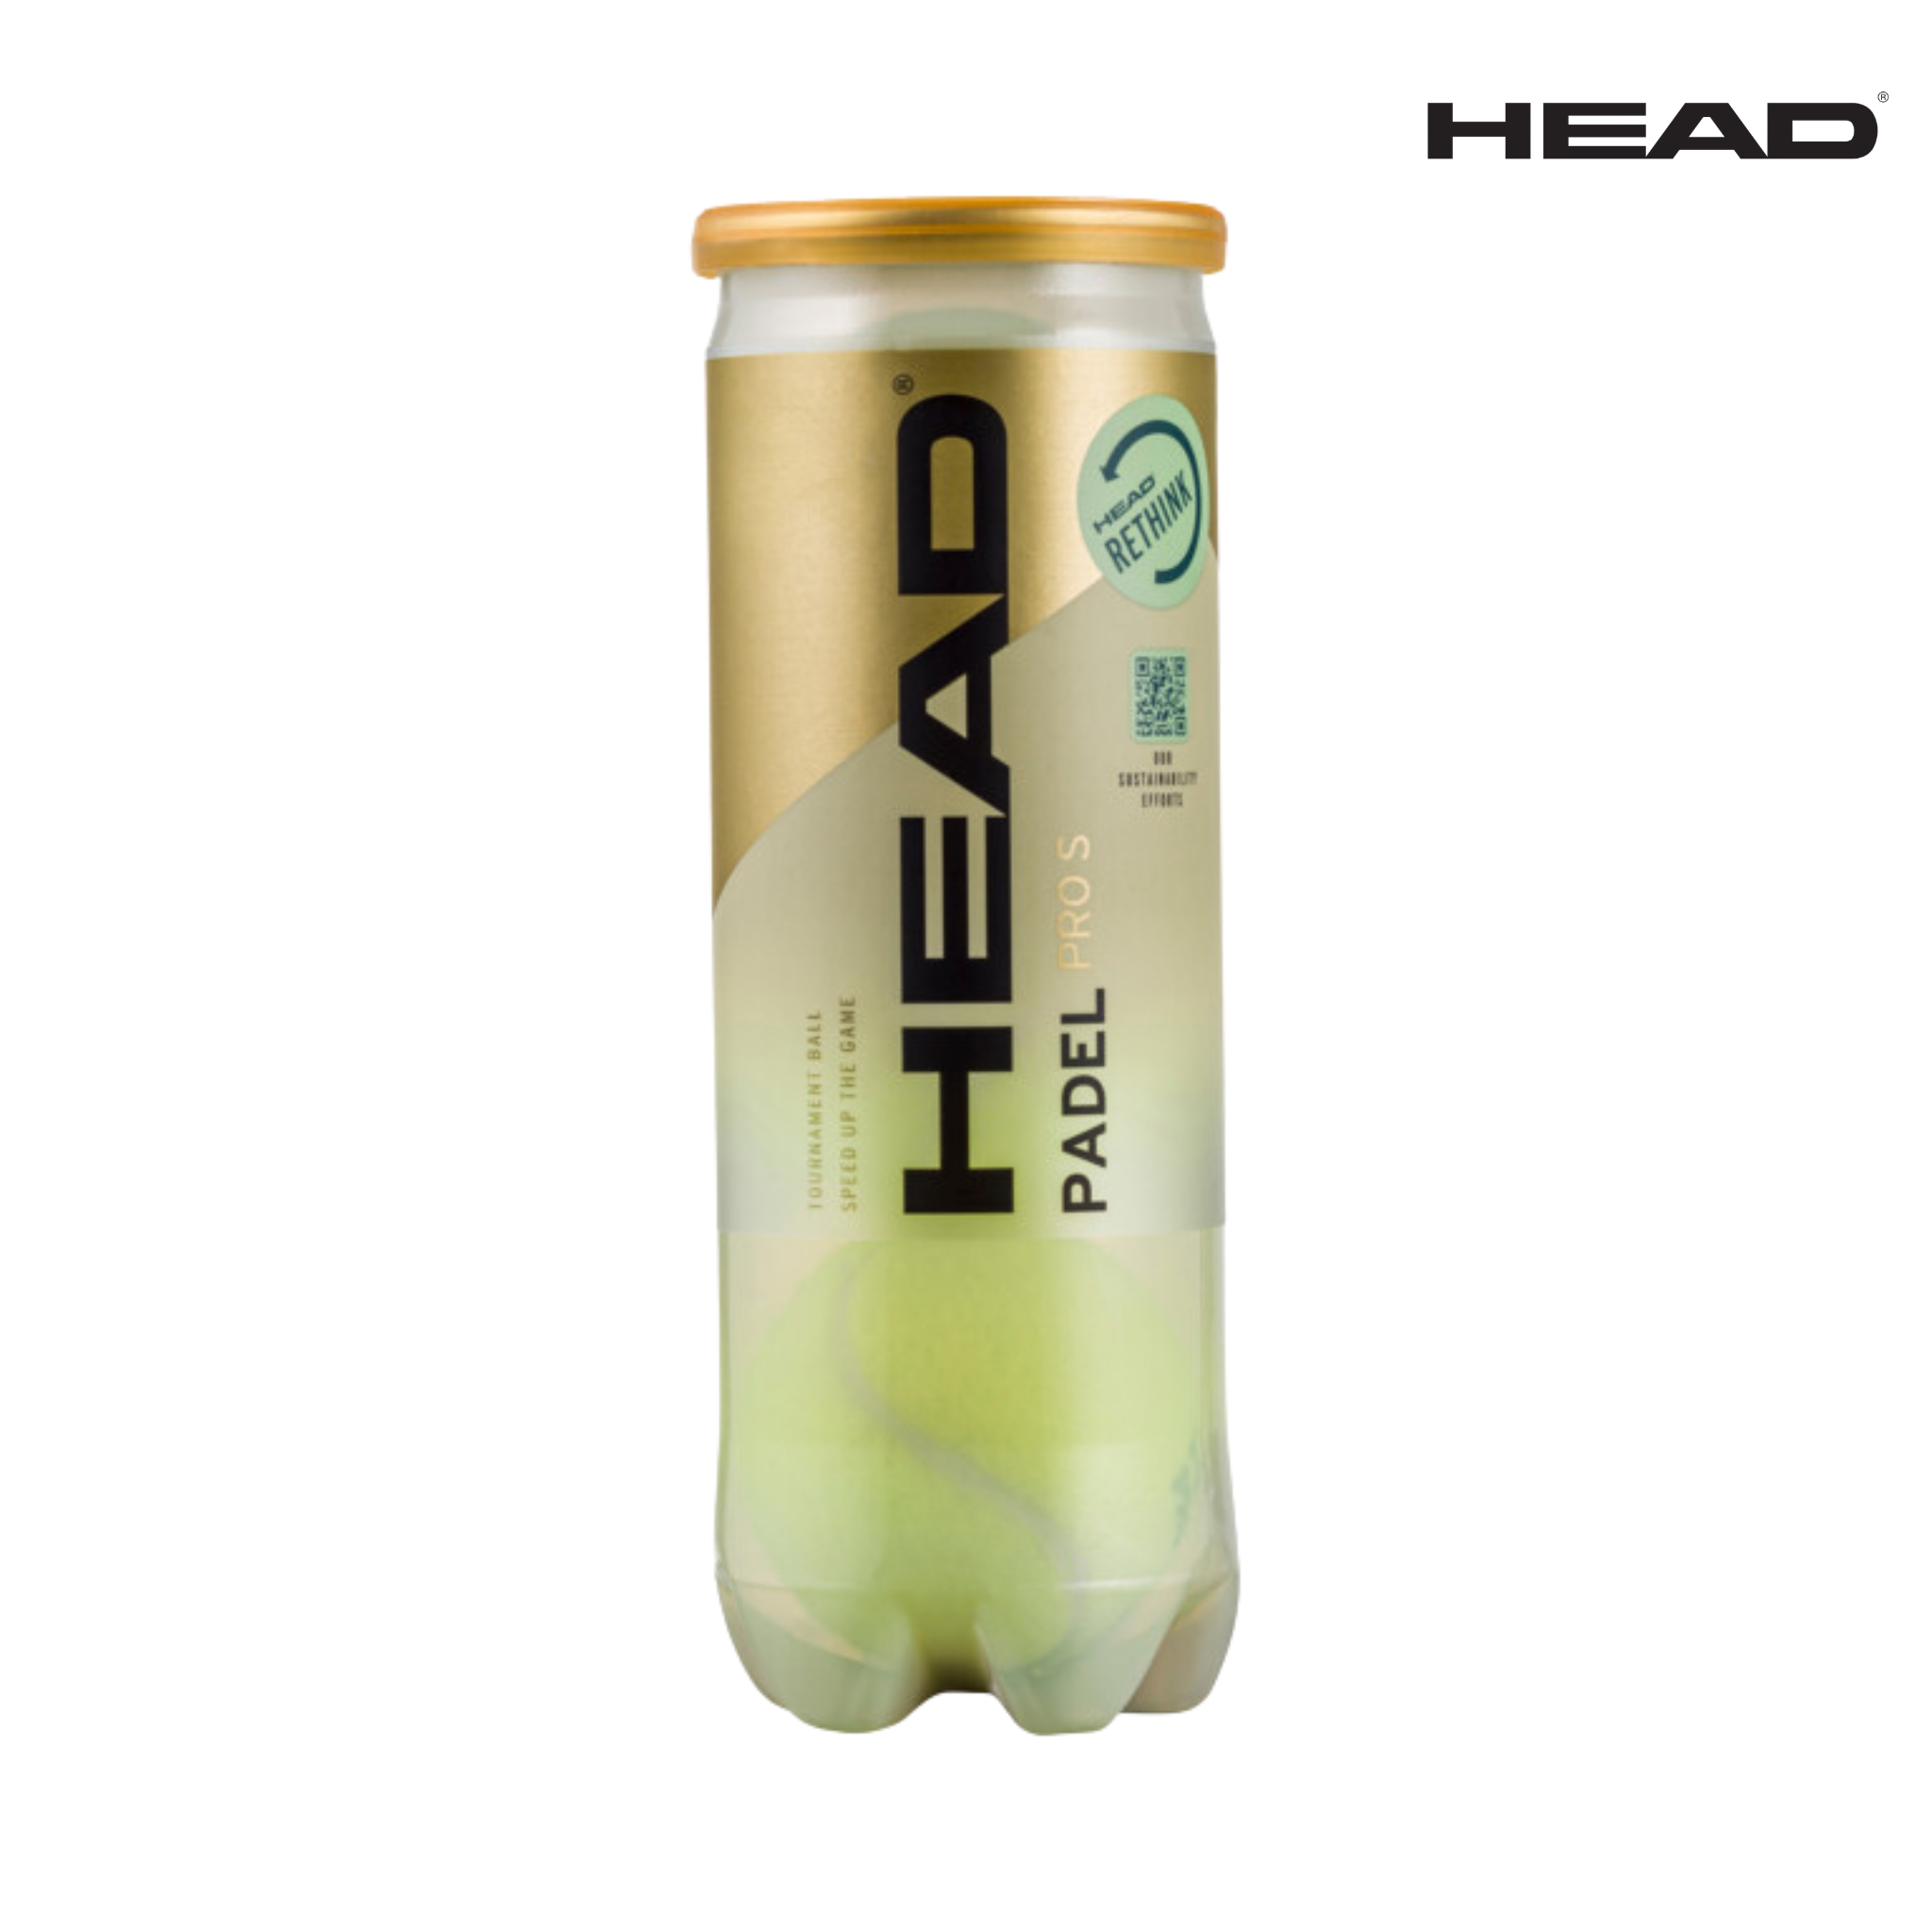 HEAD Padel Pro S 3-BAL TUBE | Padel Balls balls Head   